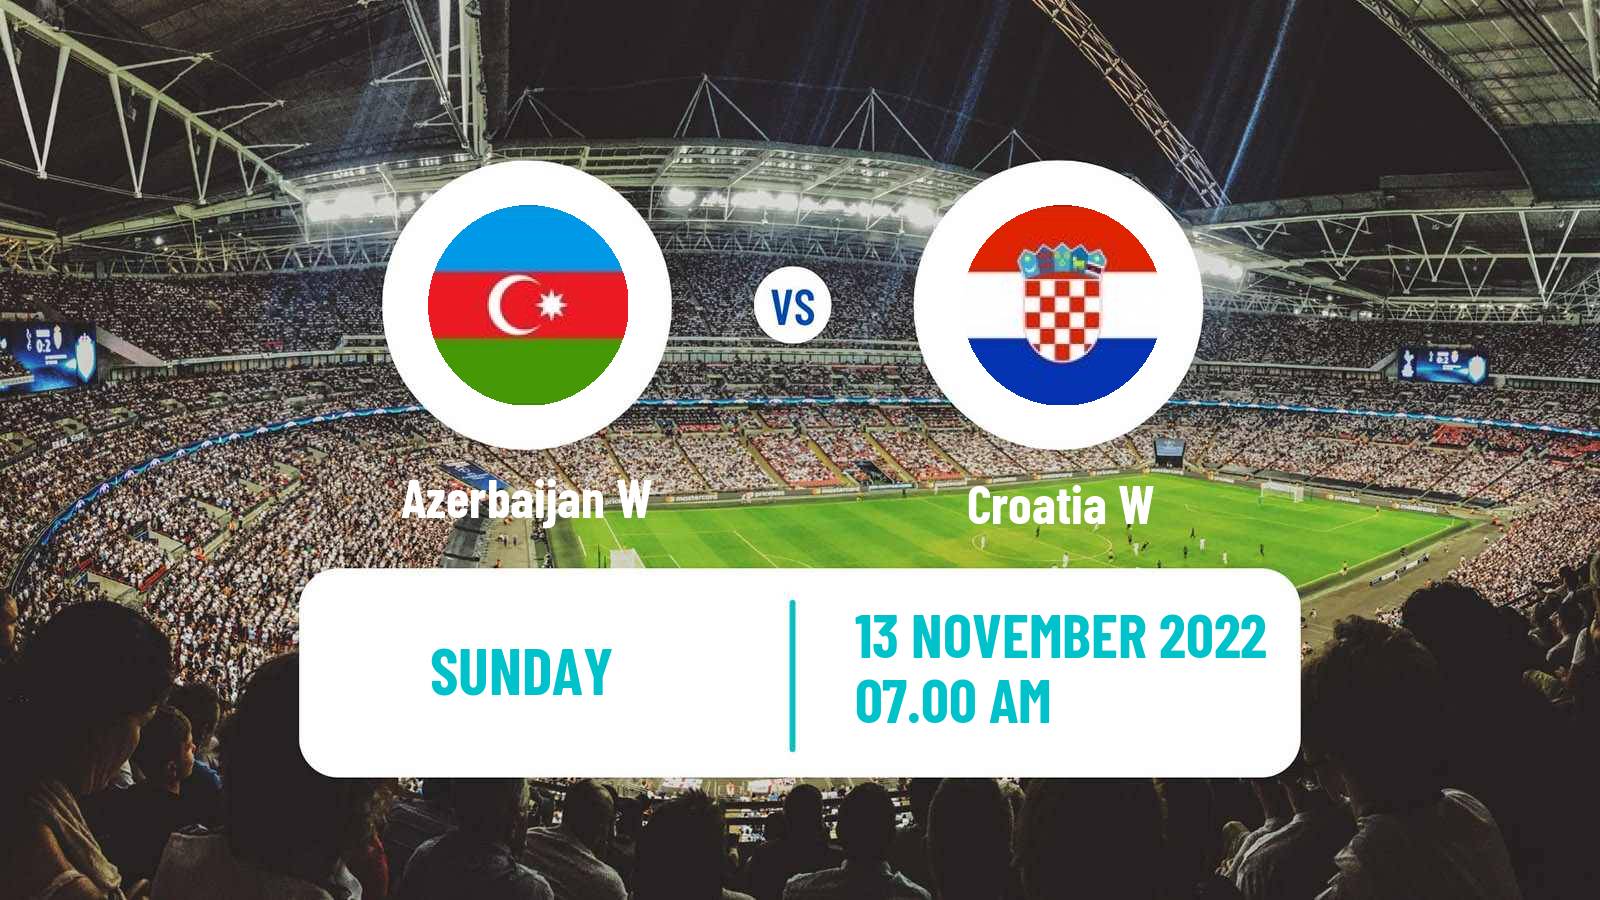 Soccer Friendly International Women Azerbaijan W - Croatia W